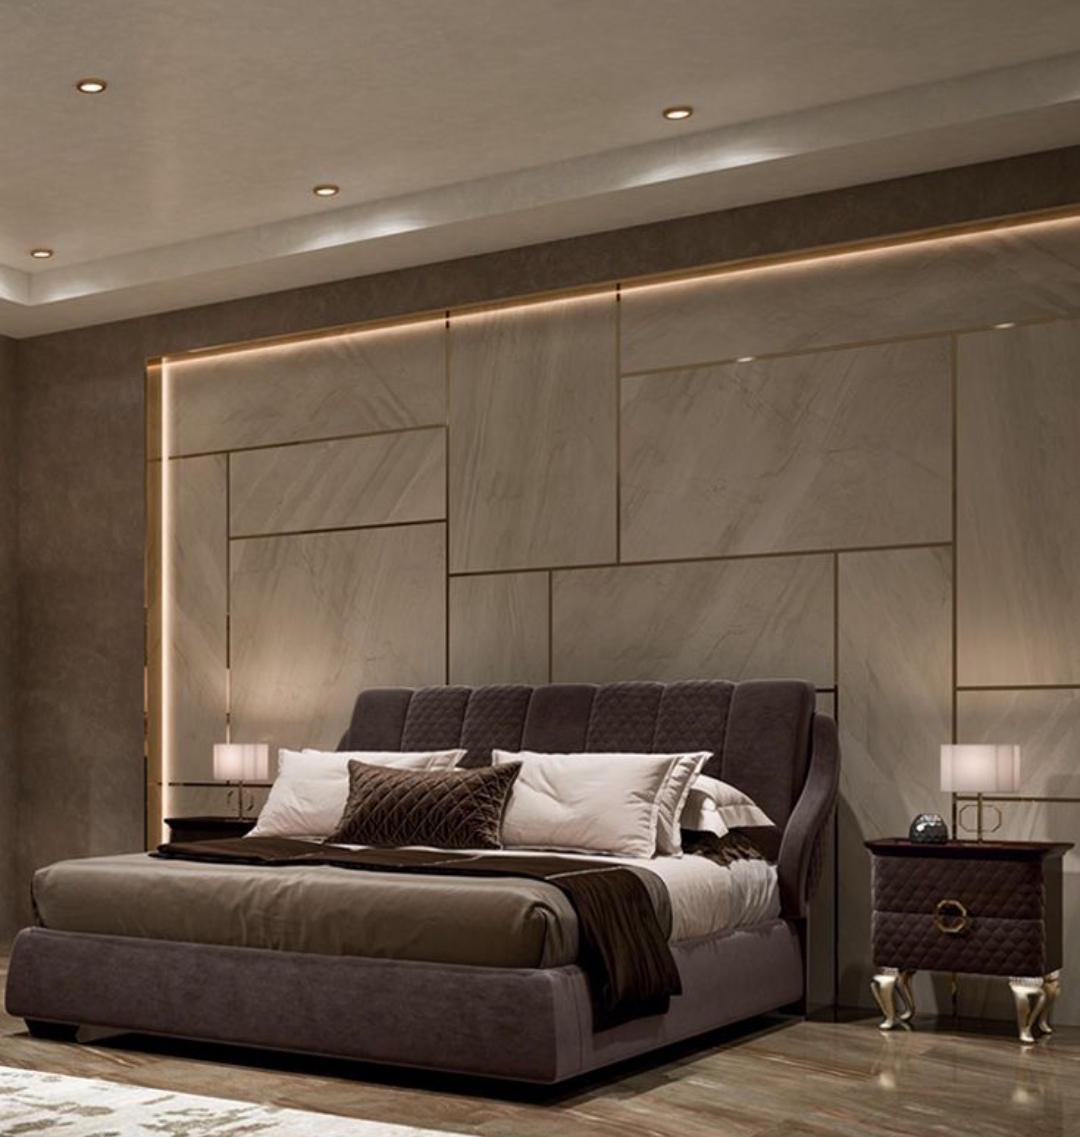 For bedroom interior, bedroom design, bedroom creative interior,  modern bedroom design, 